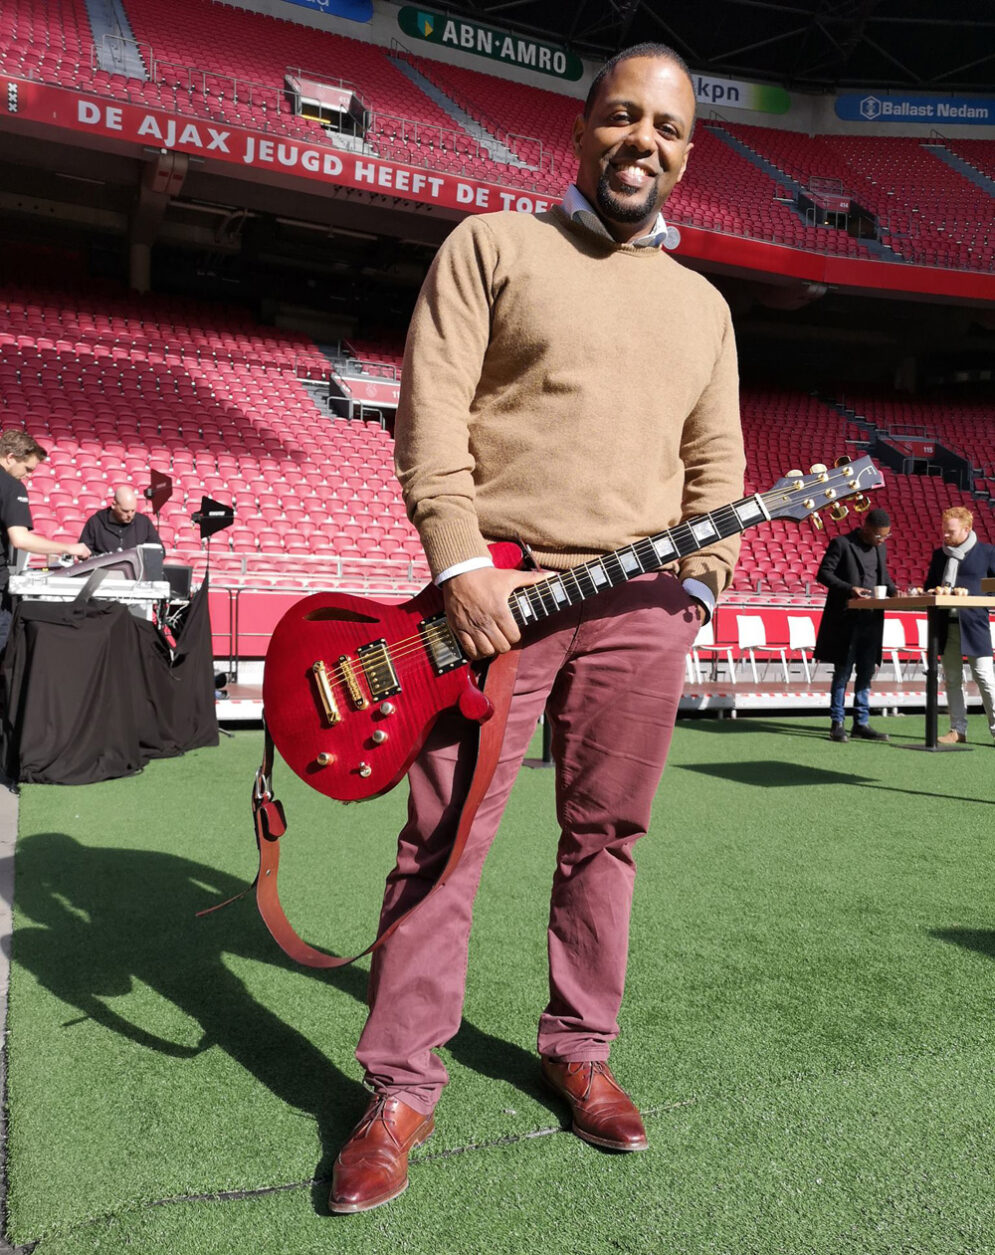 Orville Breeveld met zijn rode Fern's Guitars Custom elektrische gitaar in het Ajax stadion in Amsterdam.